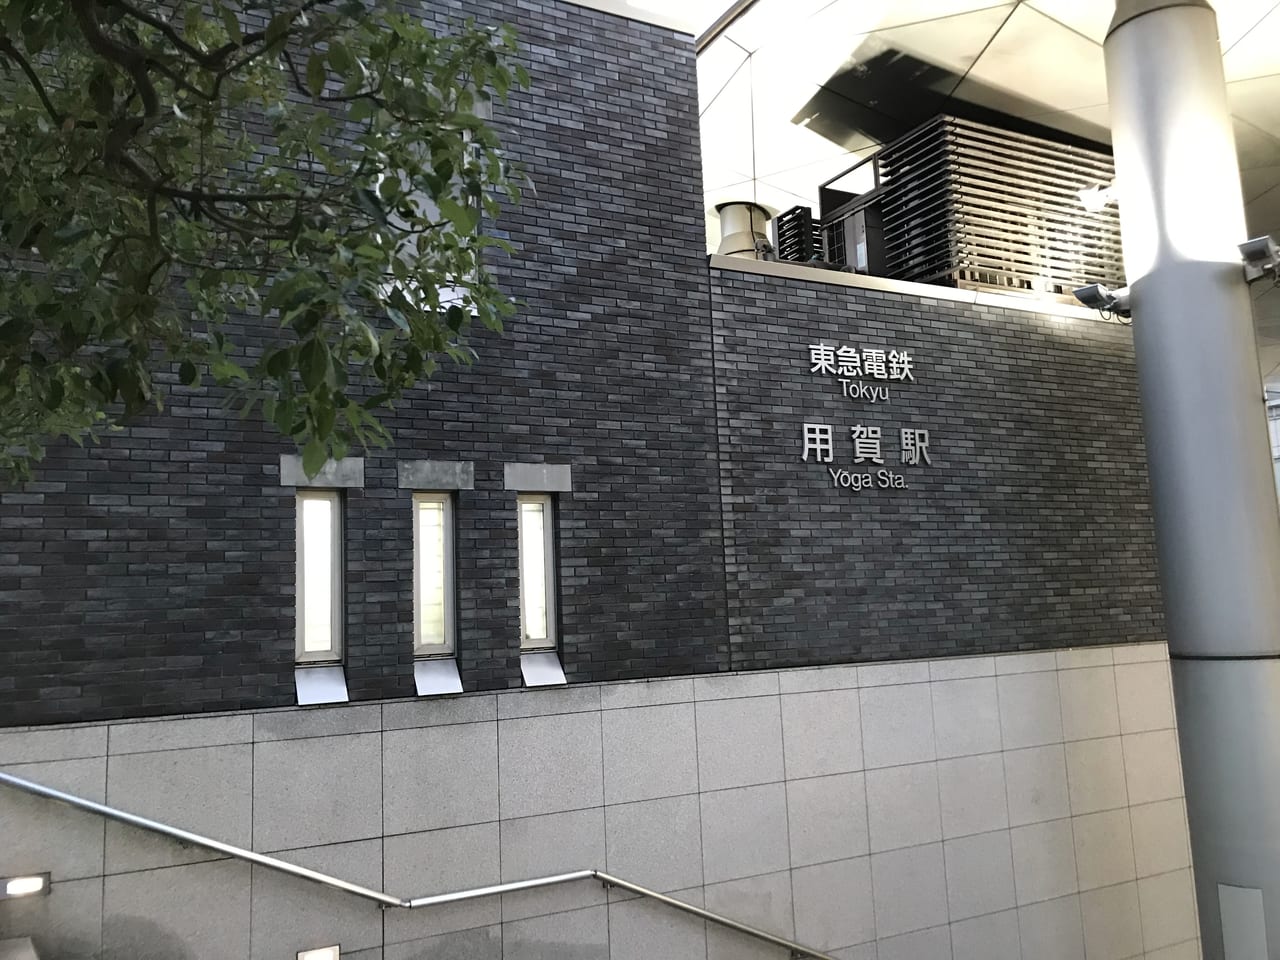 世田谷区用賀駅直結の世田谷ビジネススクエアがGMOタワーになり、駅の副称も変更されます。